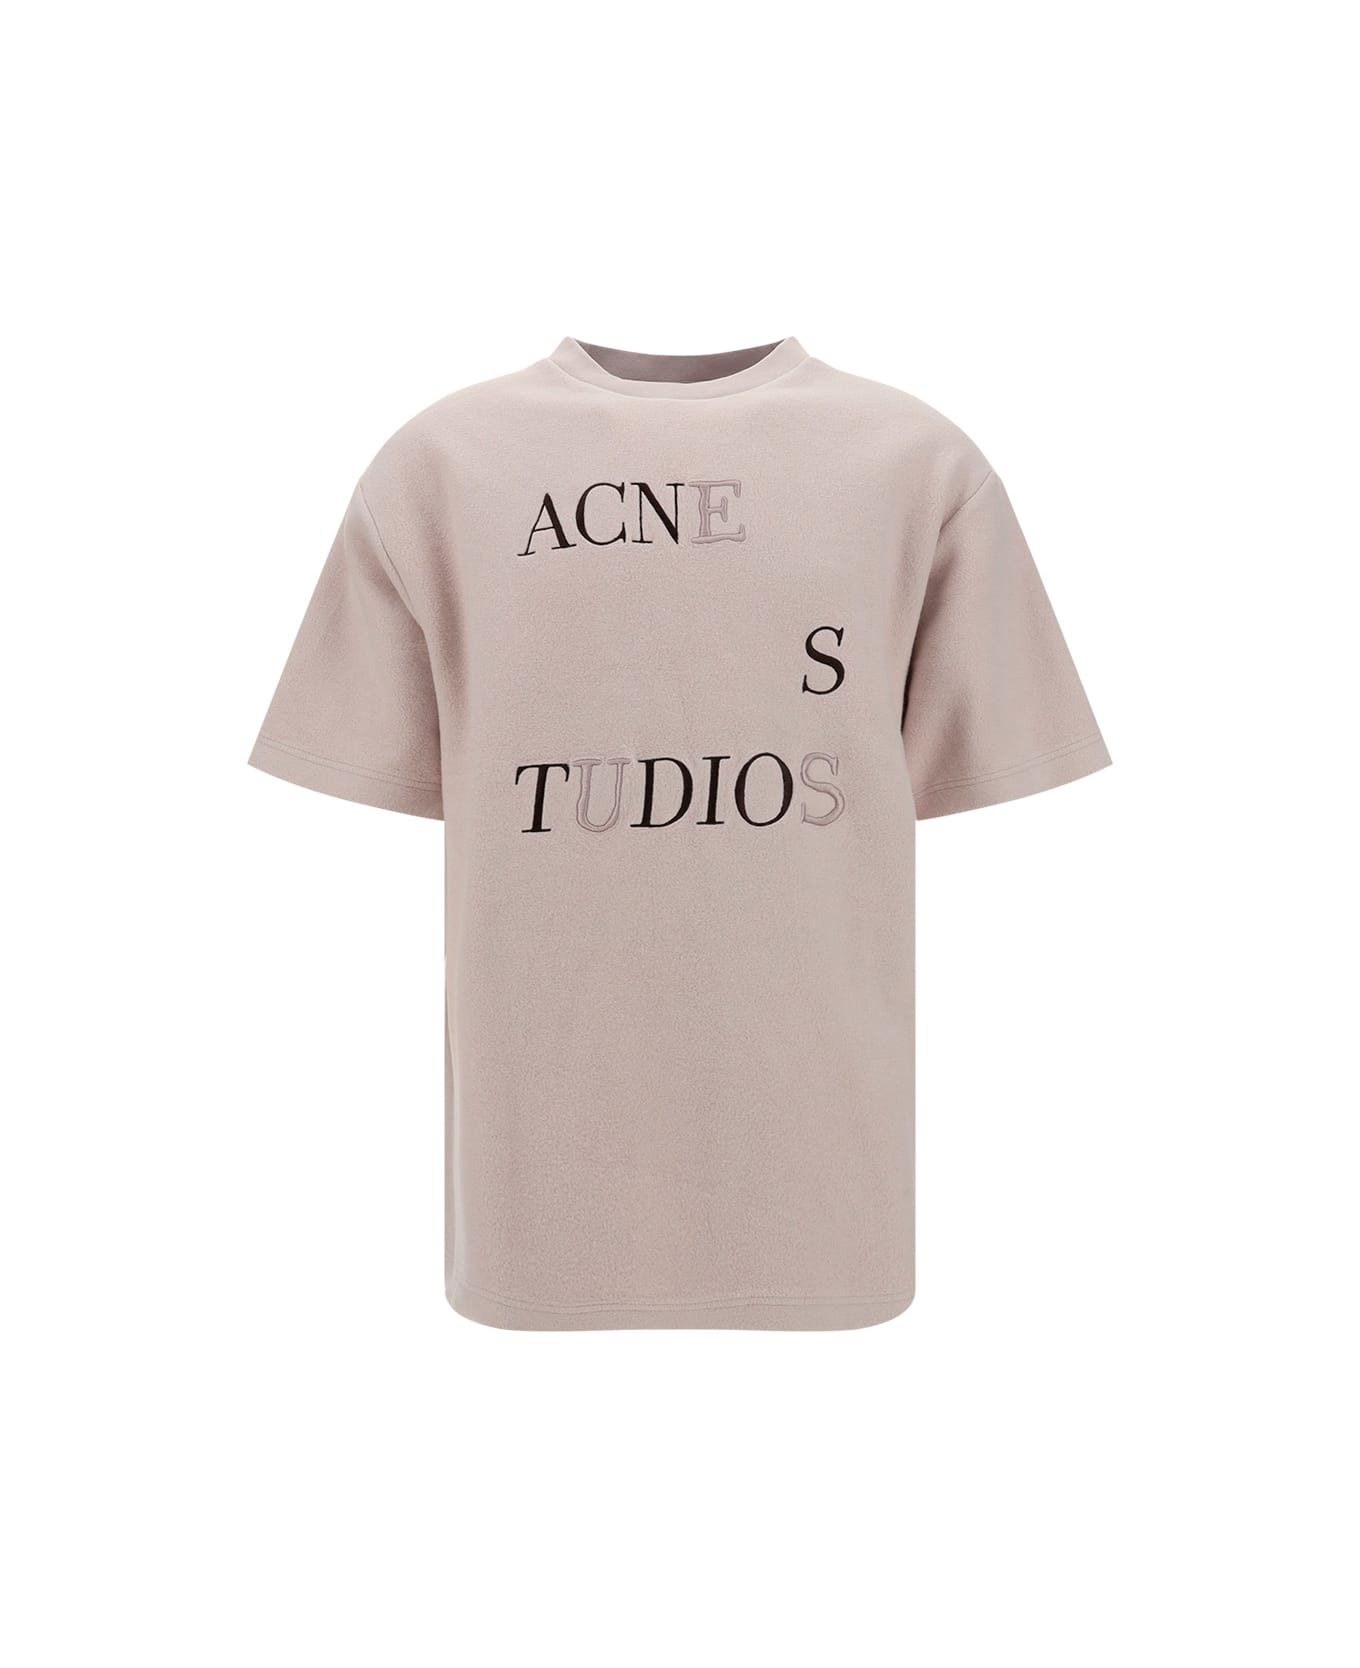 Acne Studios T-shirt - Pale Lilac